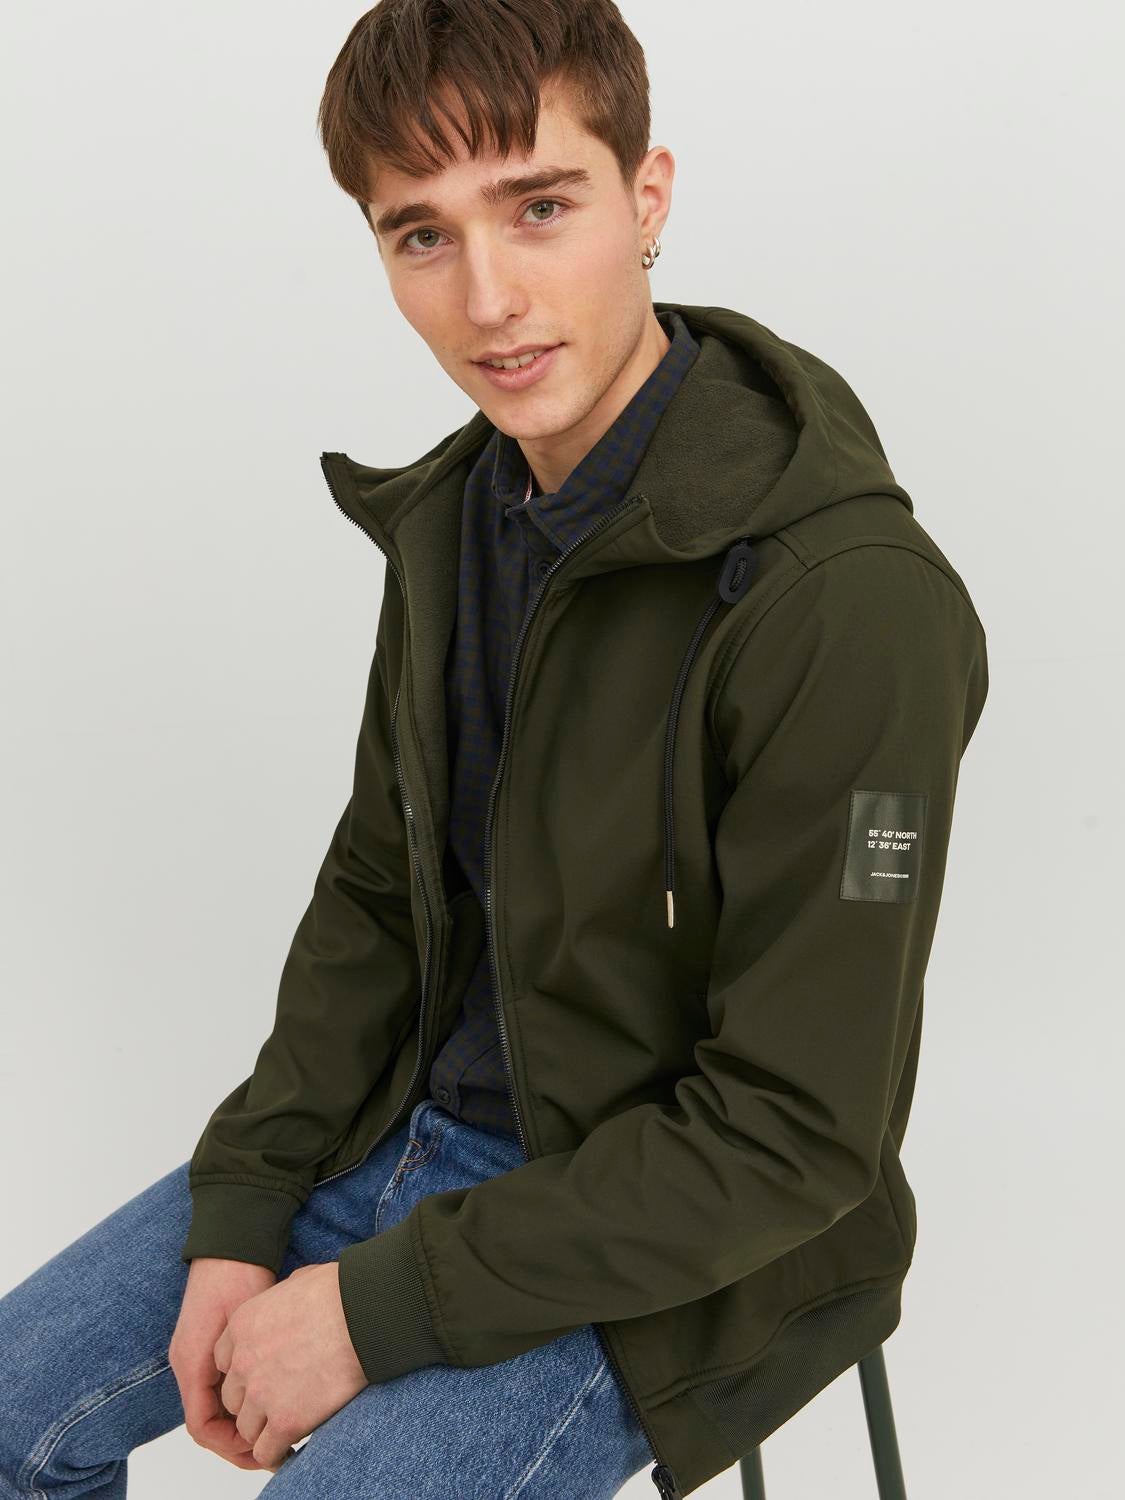 Men's Parka Coat Jack Jones Loop Hooded Full Zip Jacket in Green | eBay